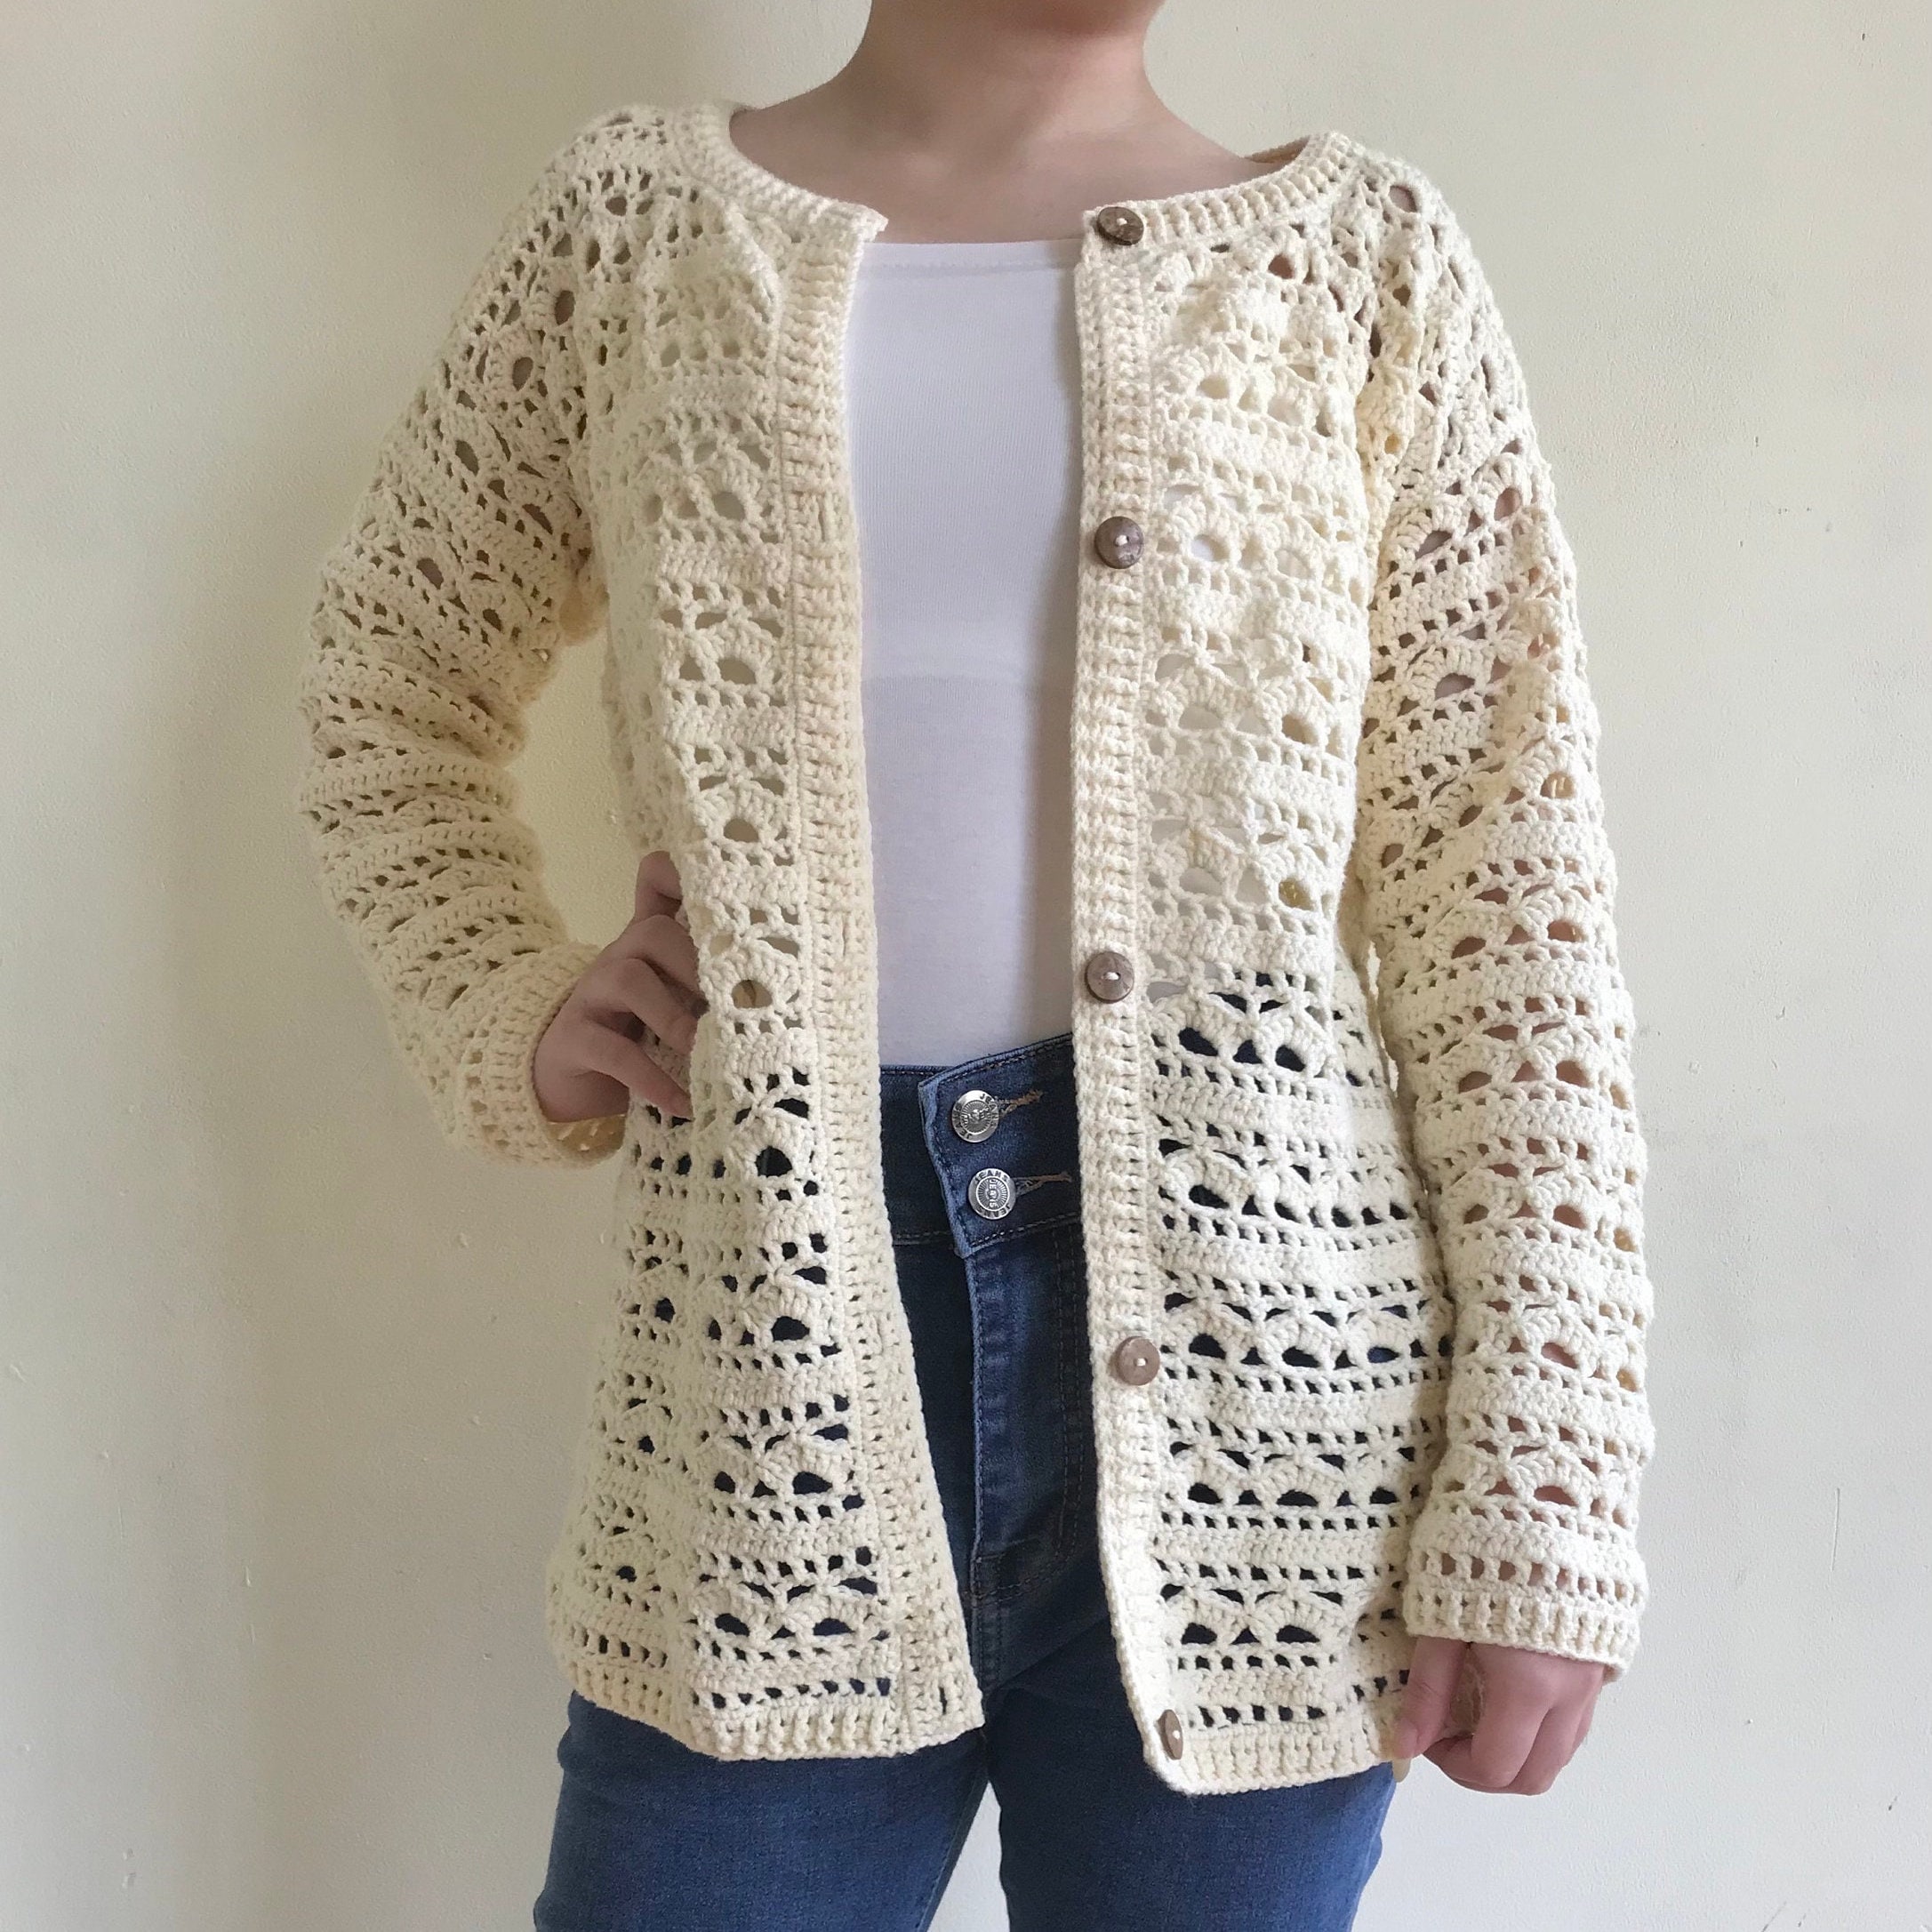 New Crochet Patterns - Lorraine Cardi Crochet Pattern